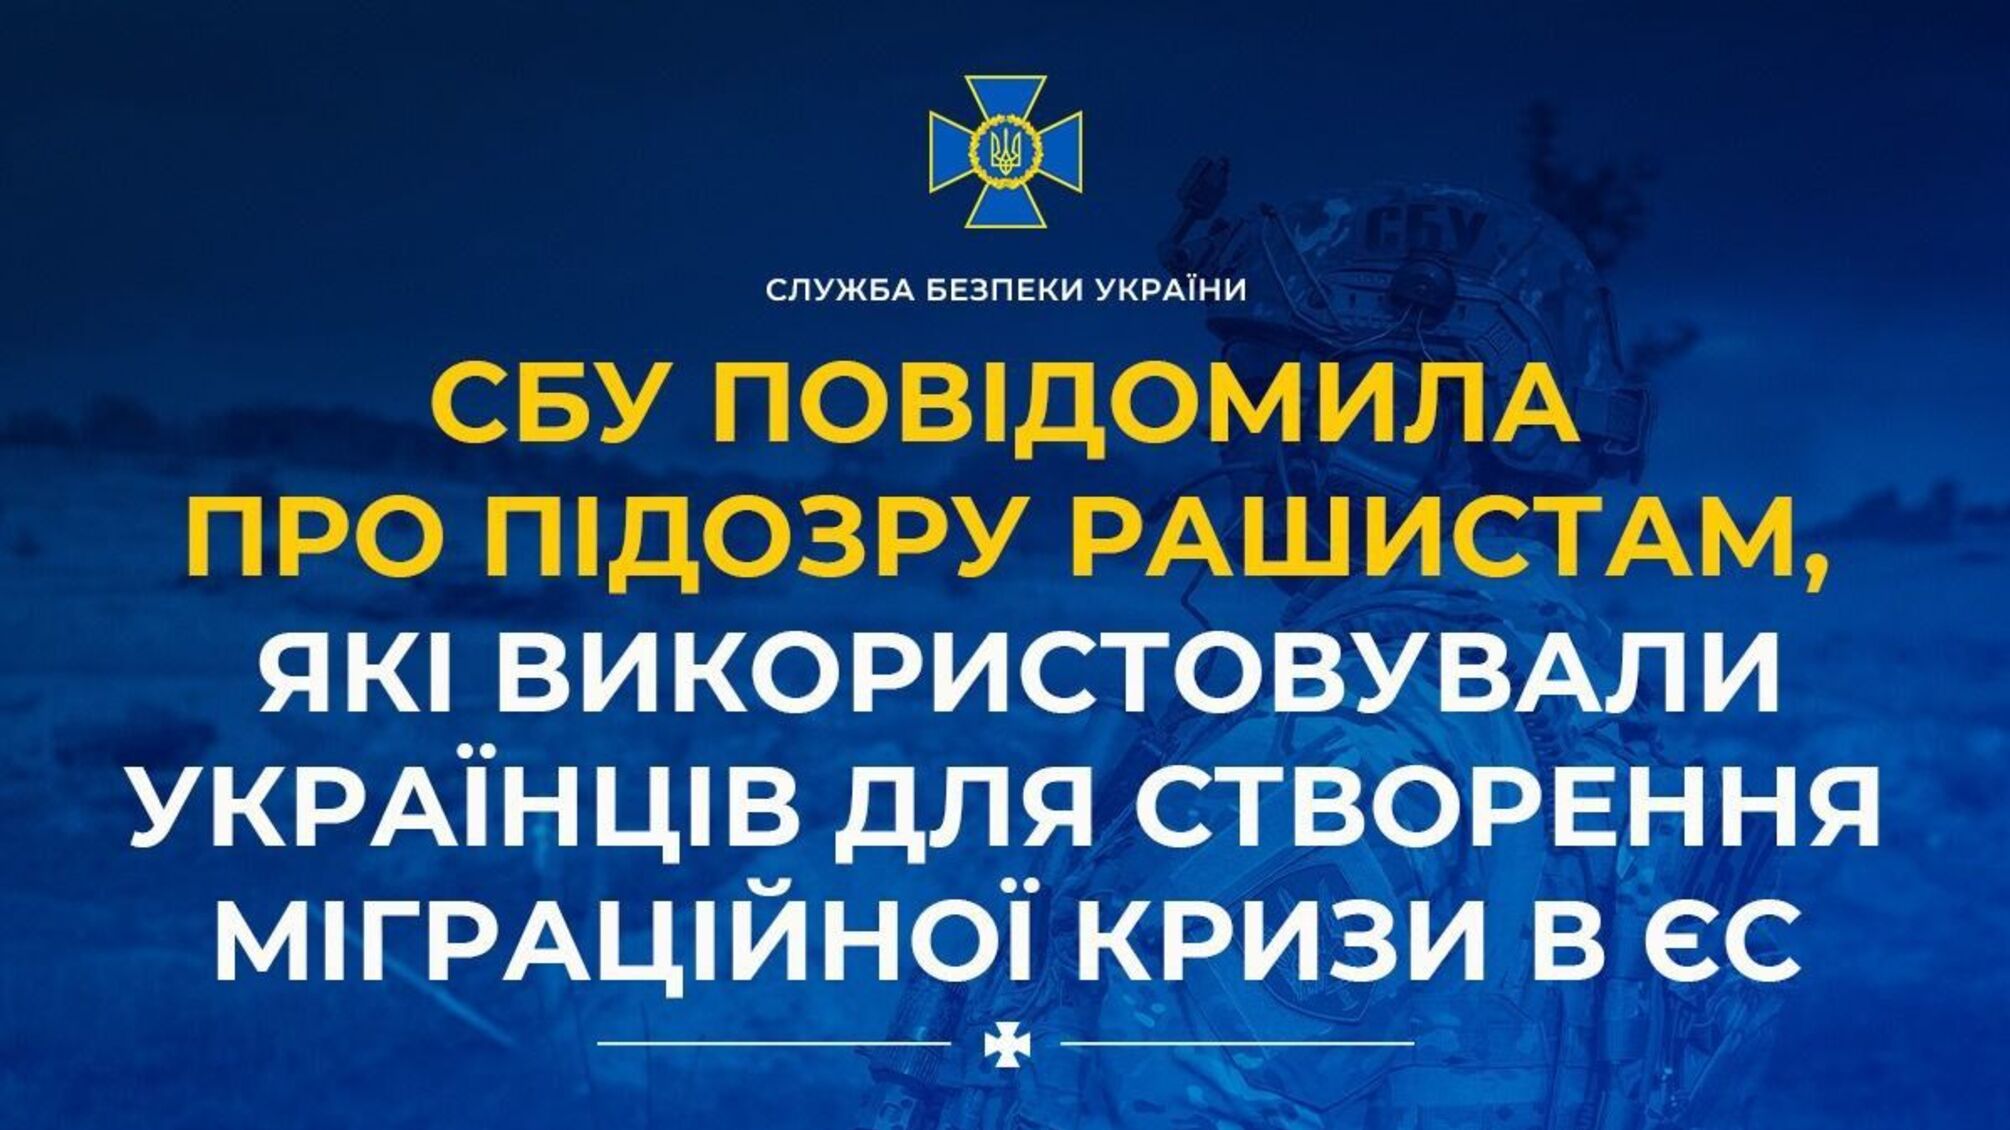 СБУ сообщила о подозрении оккупантам, использовавшим украинцев для создания миграционного кризиса в ЕС